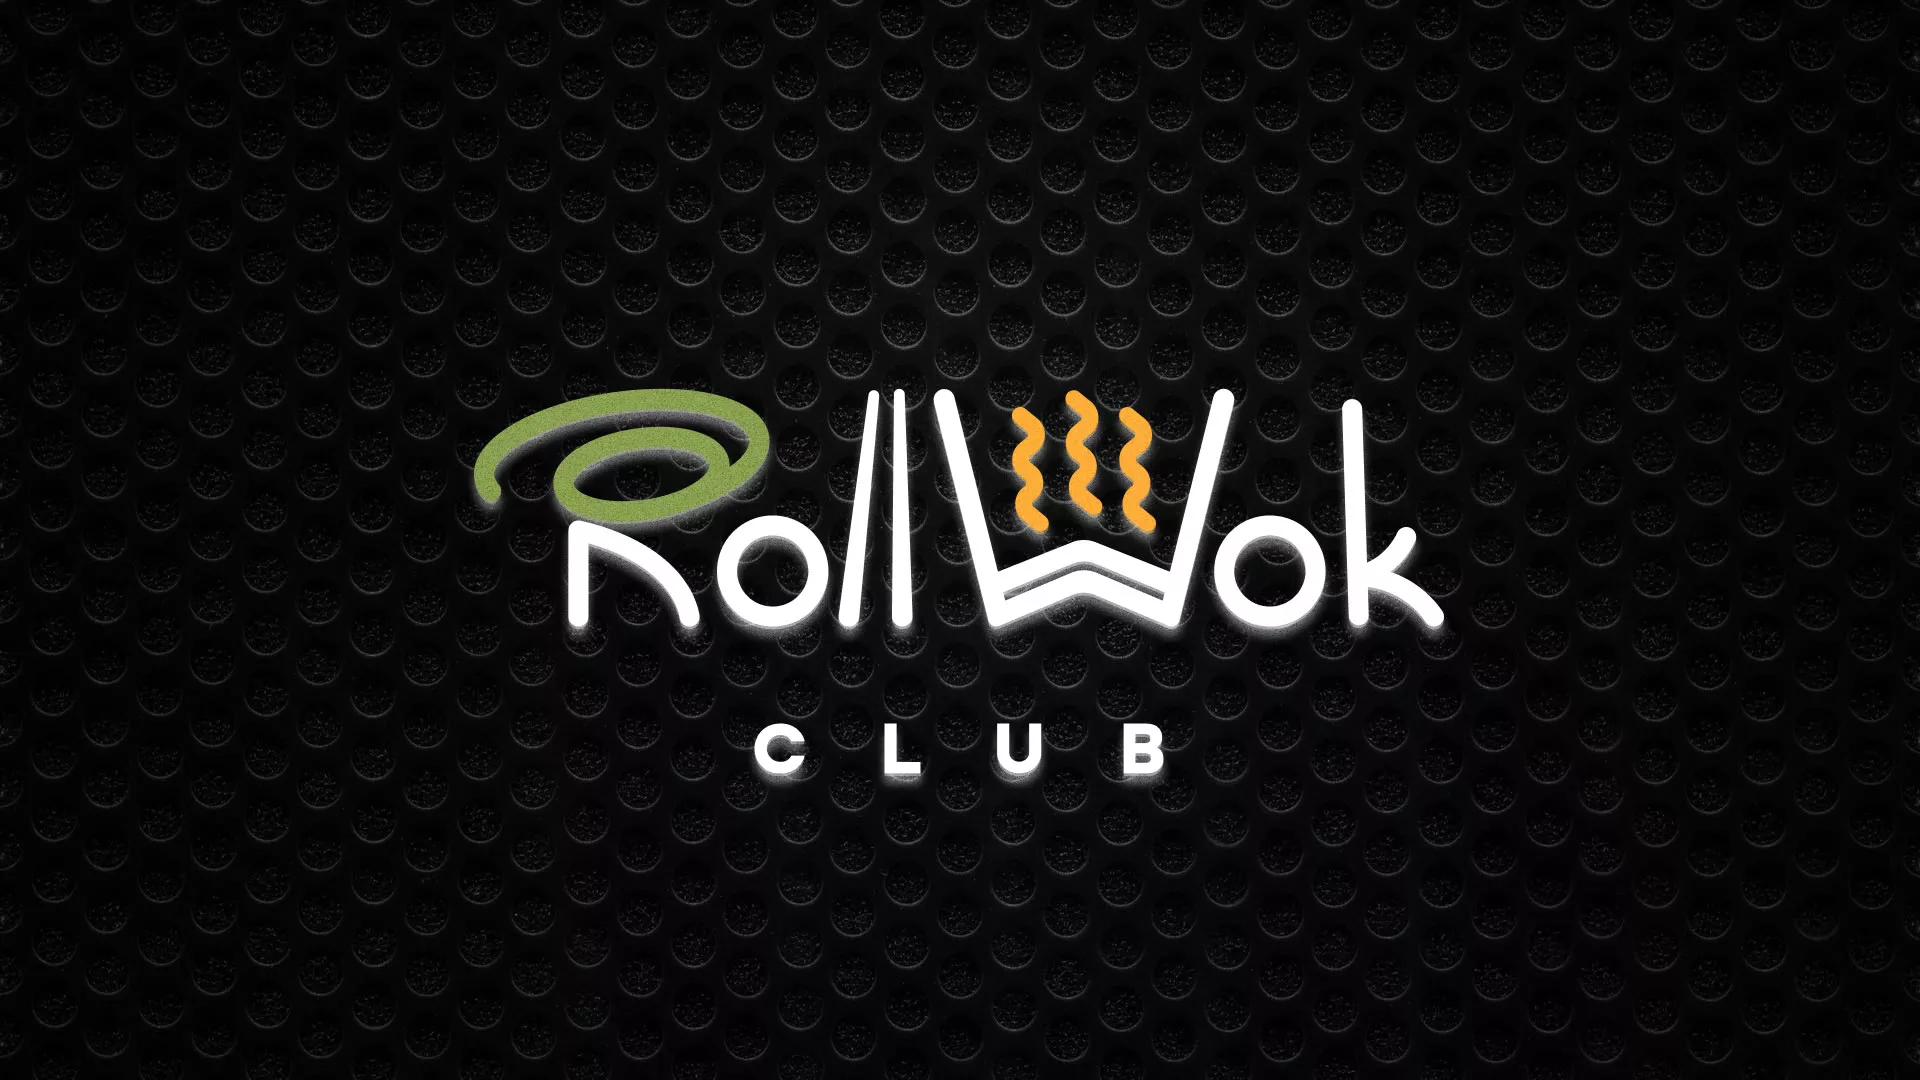 Брендирование торговых точек суши-бара «Roll Wok Club» в Комсомольске-на-Амуре